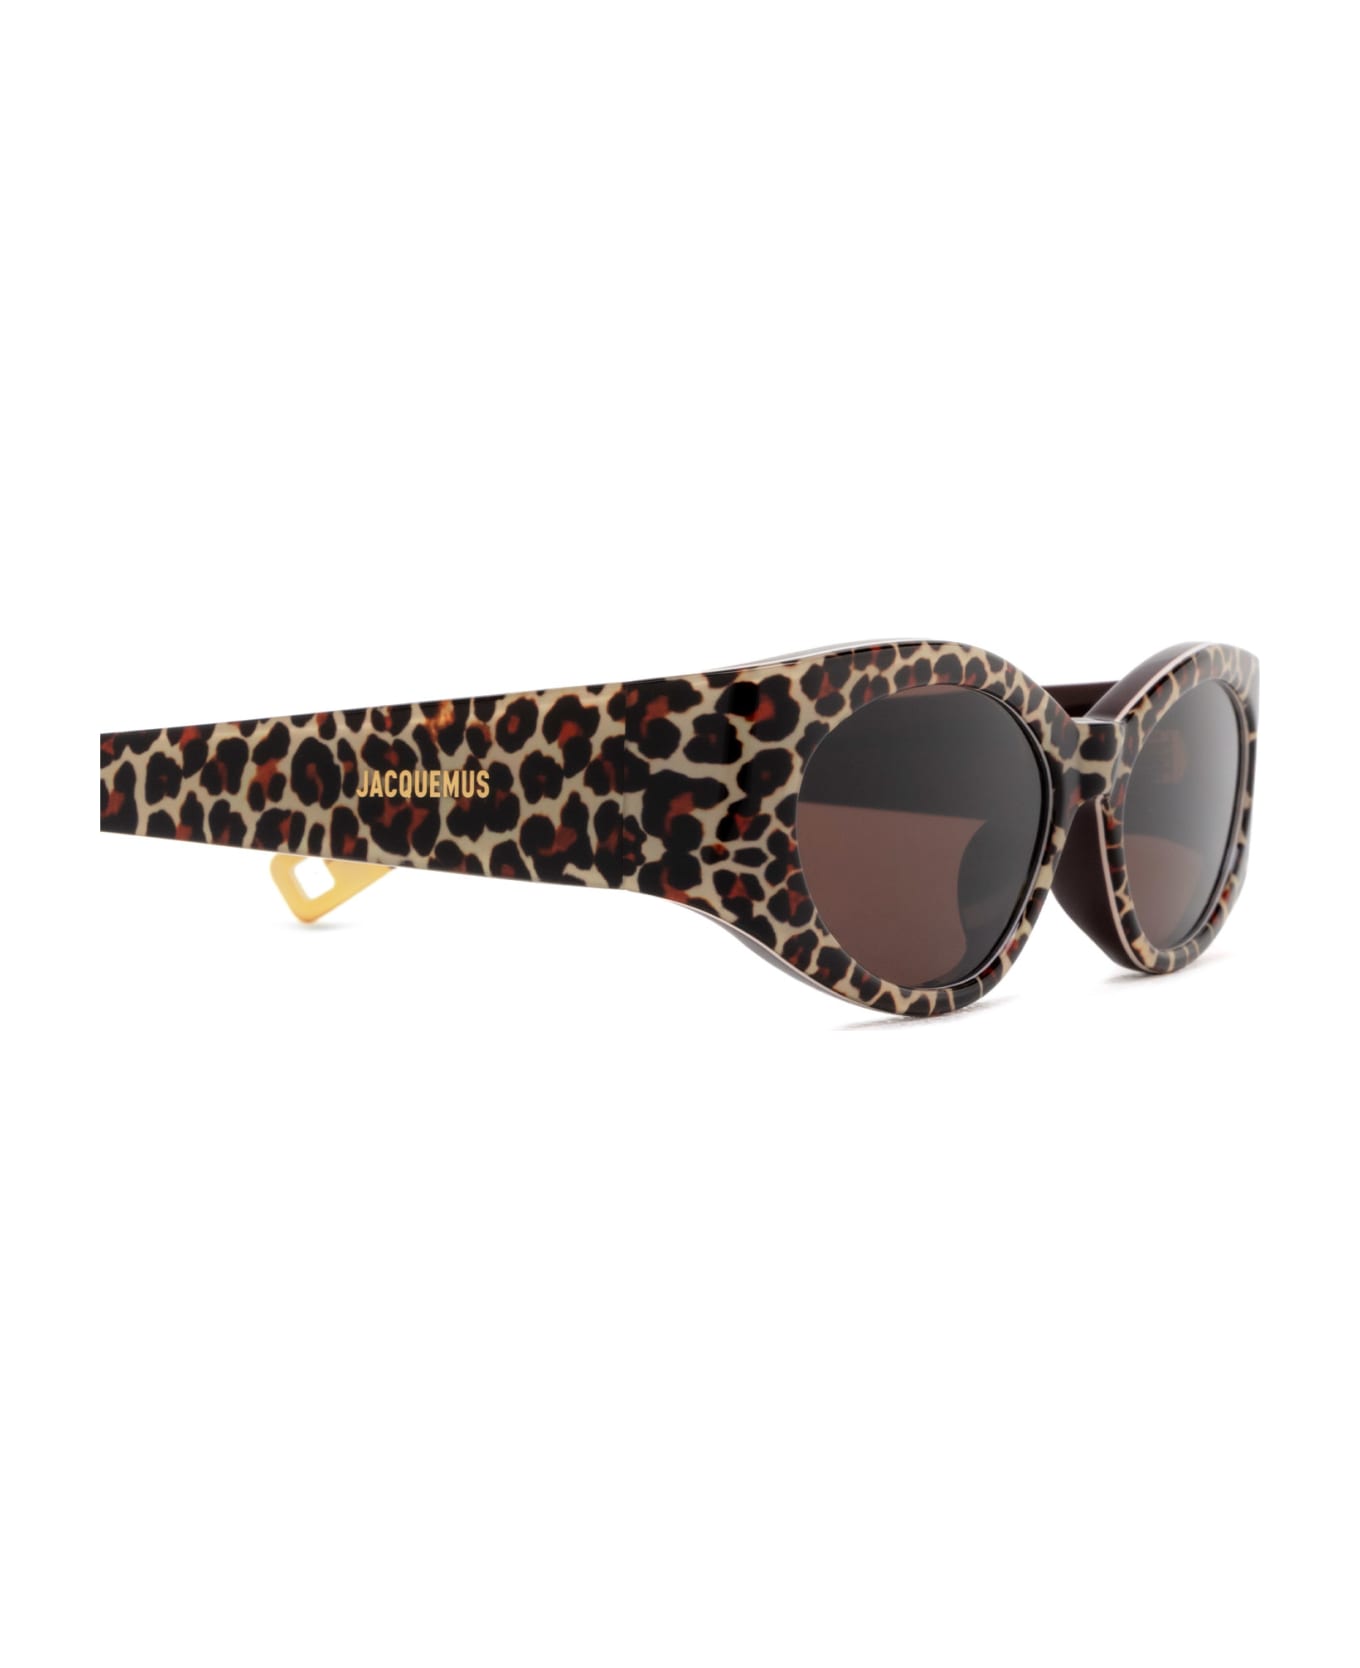 Jacquemus Jac4 Leopard Sunglasses - Leopard